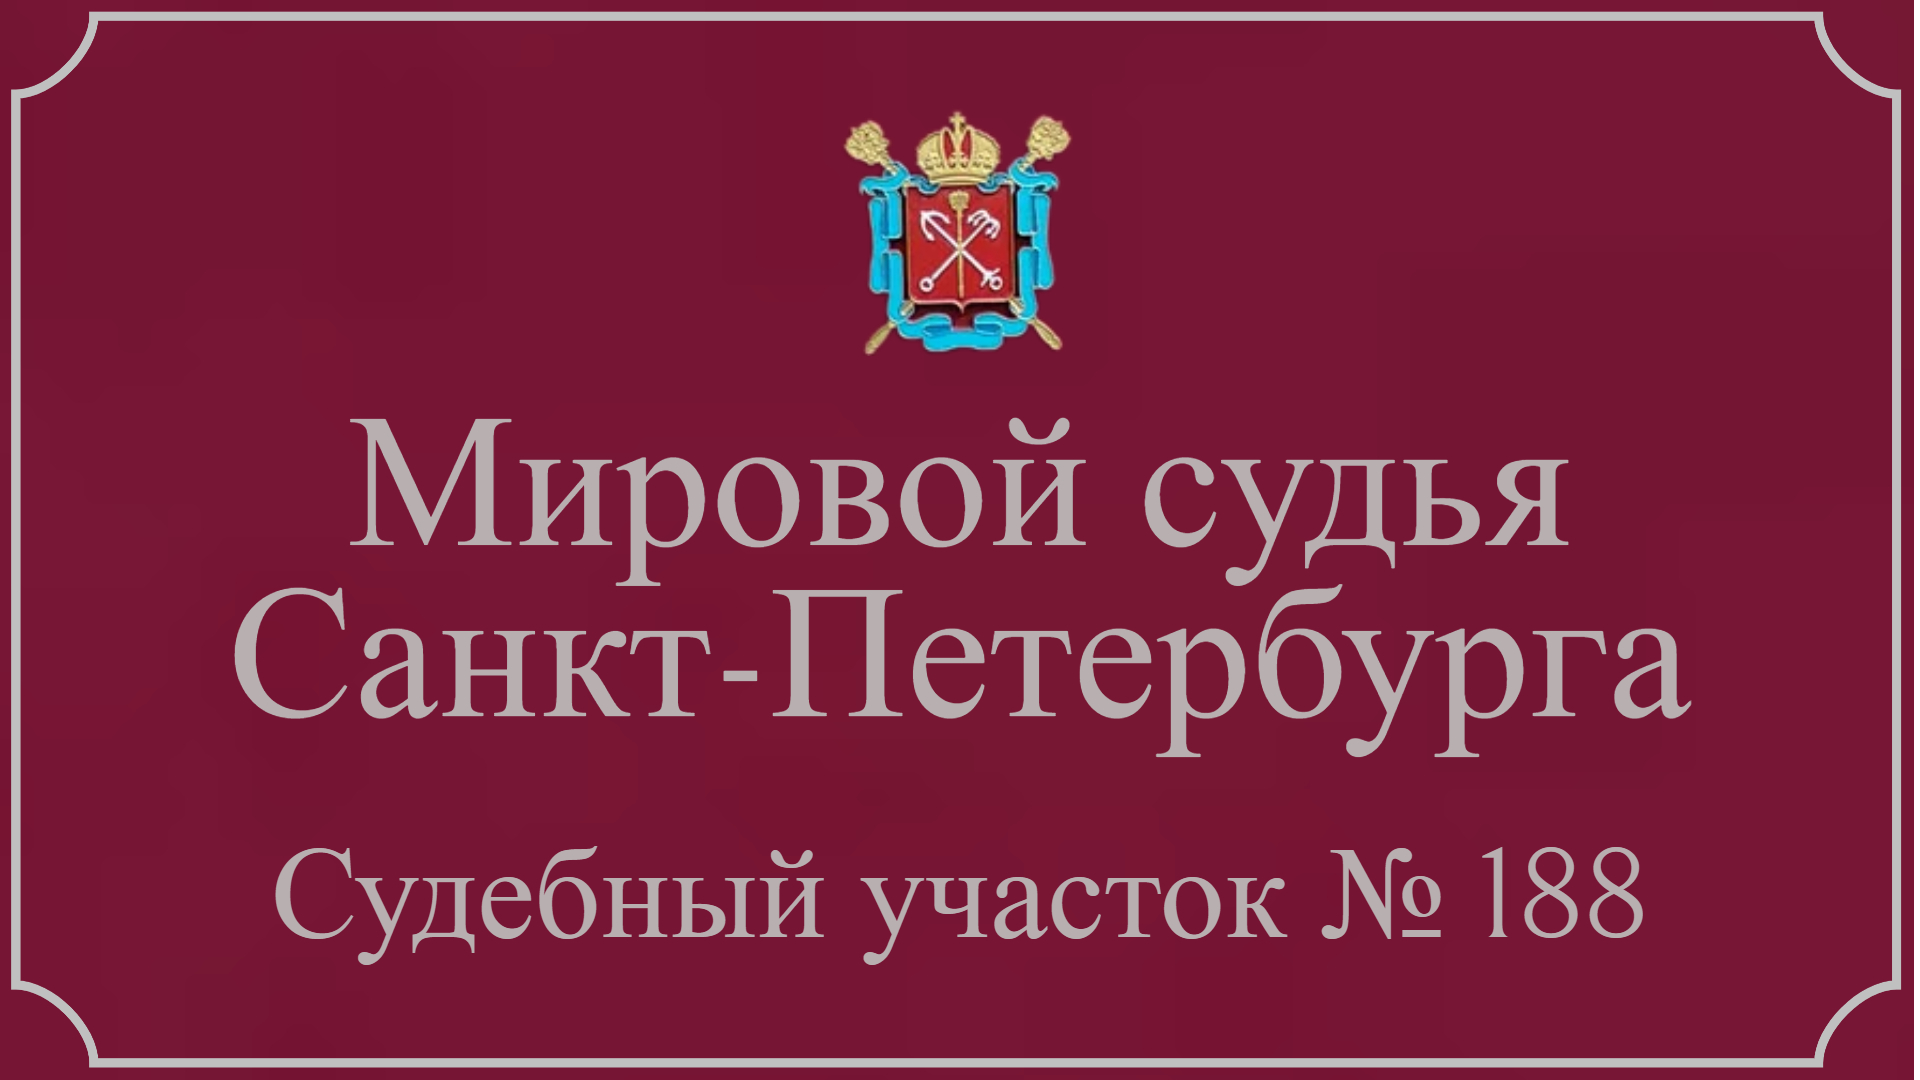 Информация по 188 судебному участку в Санкт-Петербурге.